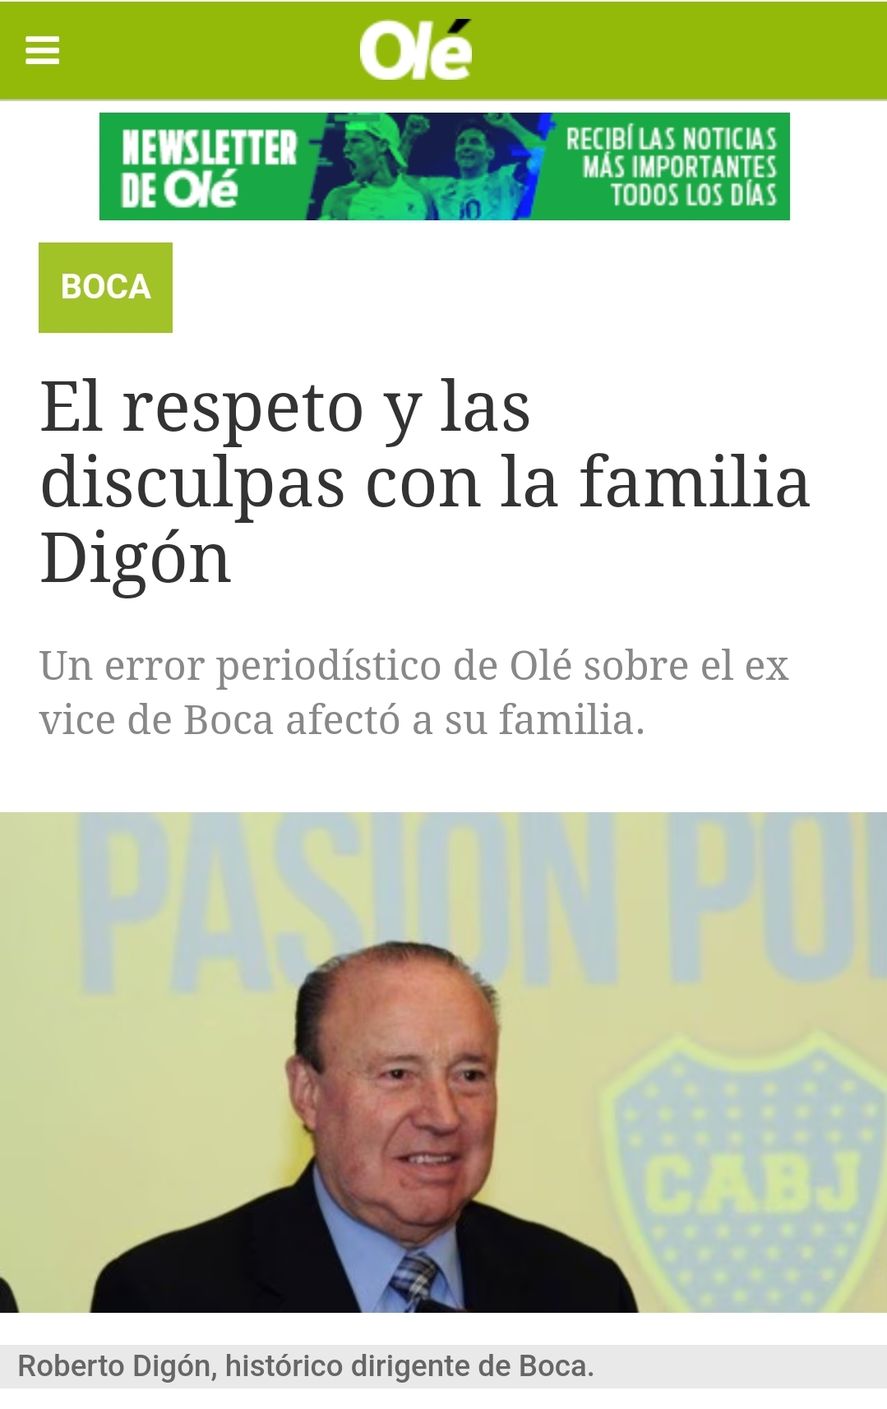 El artículo del periódico Olé, del grupo Clarín, en dónde pide disculpas por haber mencionado la muerte de Roberto Digón, dirigente de Boca  (que pasara tanto por las CD de Alegre, Macri y Riquelme), cómo uno de los "conflictos" que enfrenta este año el club